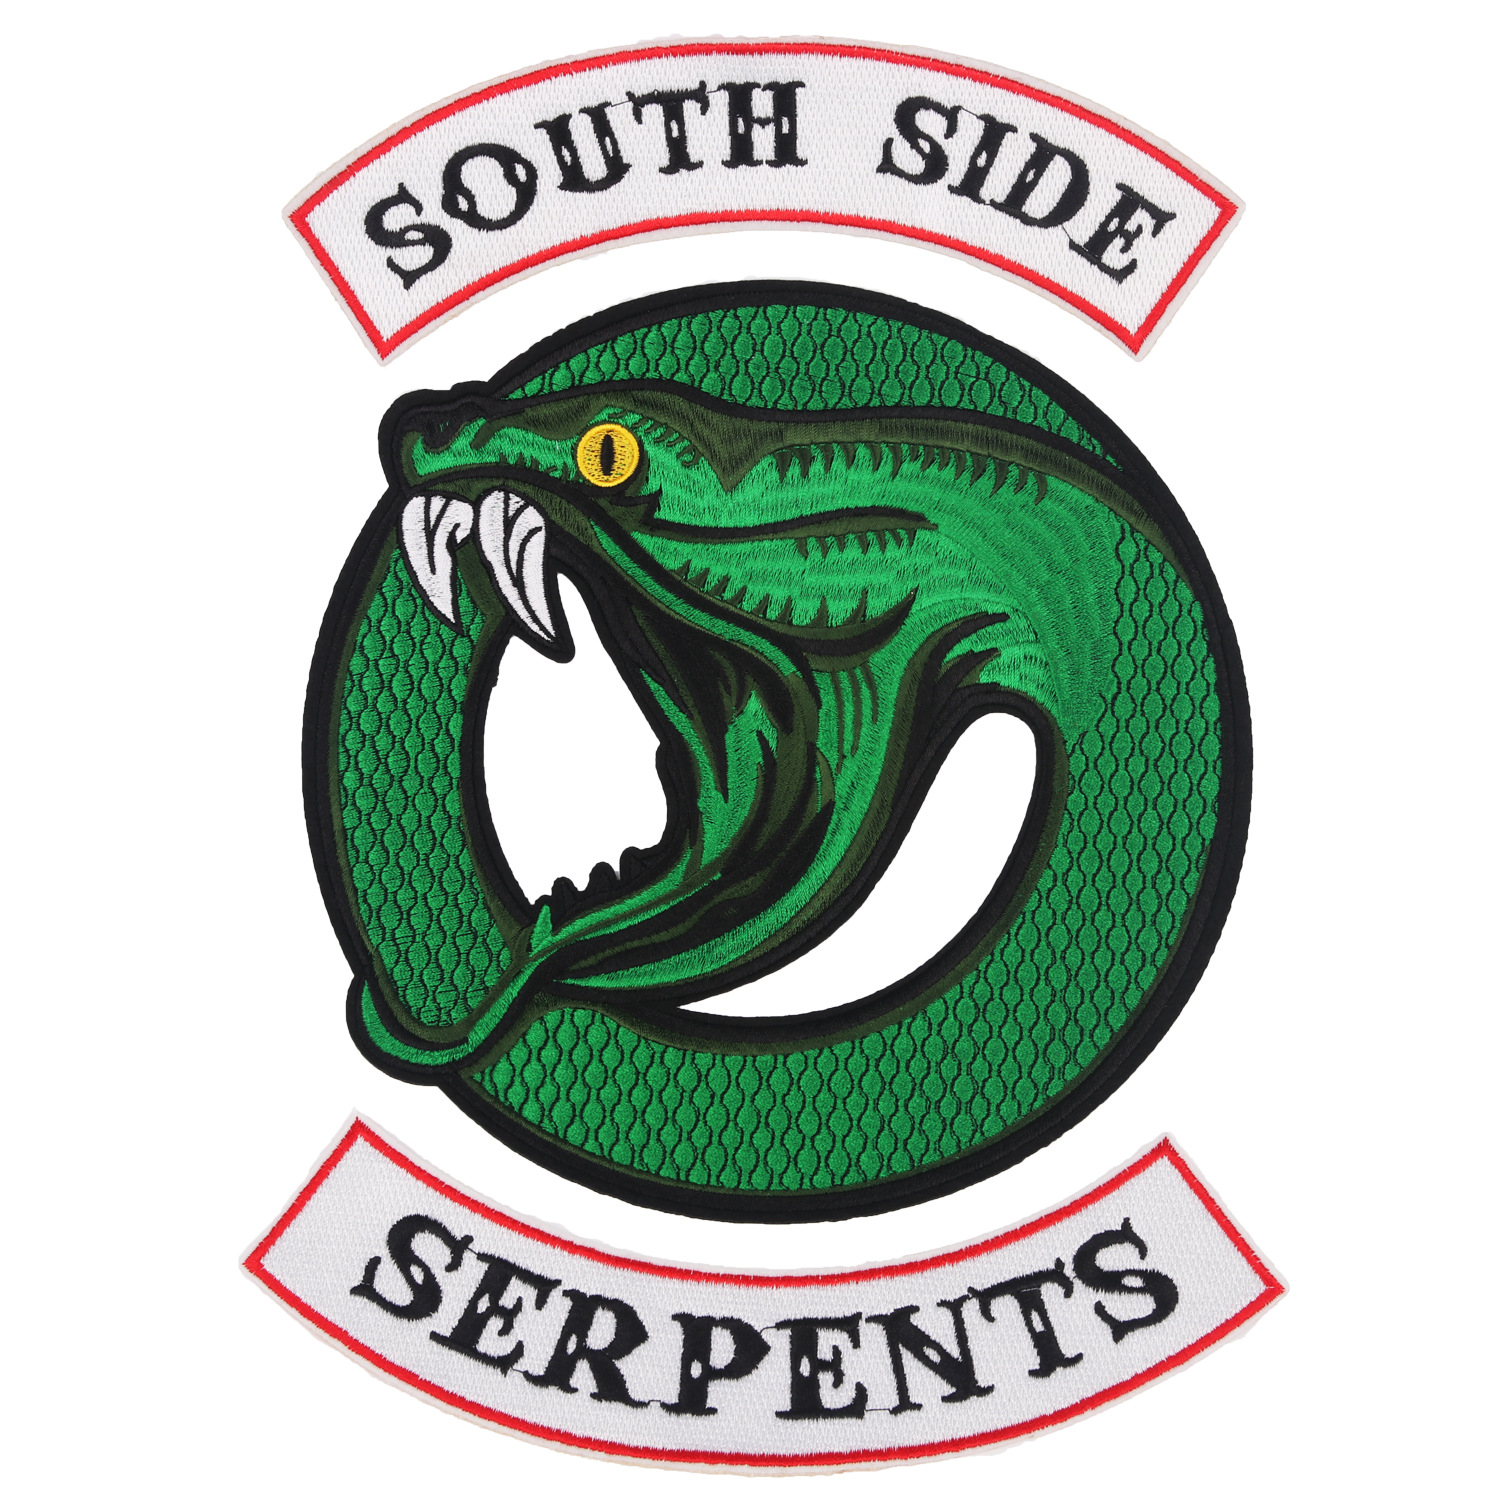 Riverdale South Side Serpants Round Logo 1 Inch Tall Metal Enamel Pin